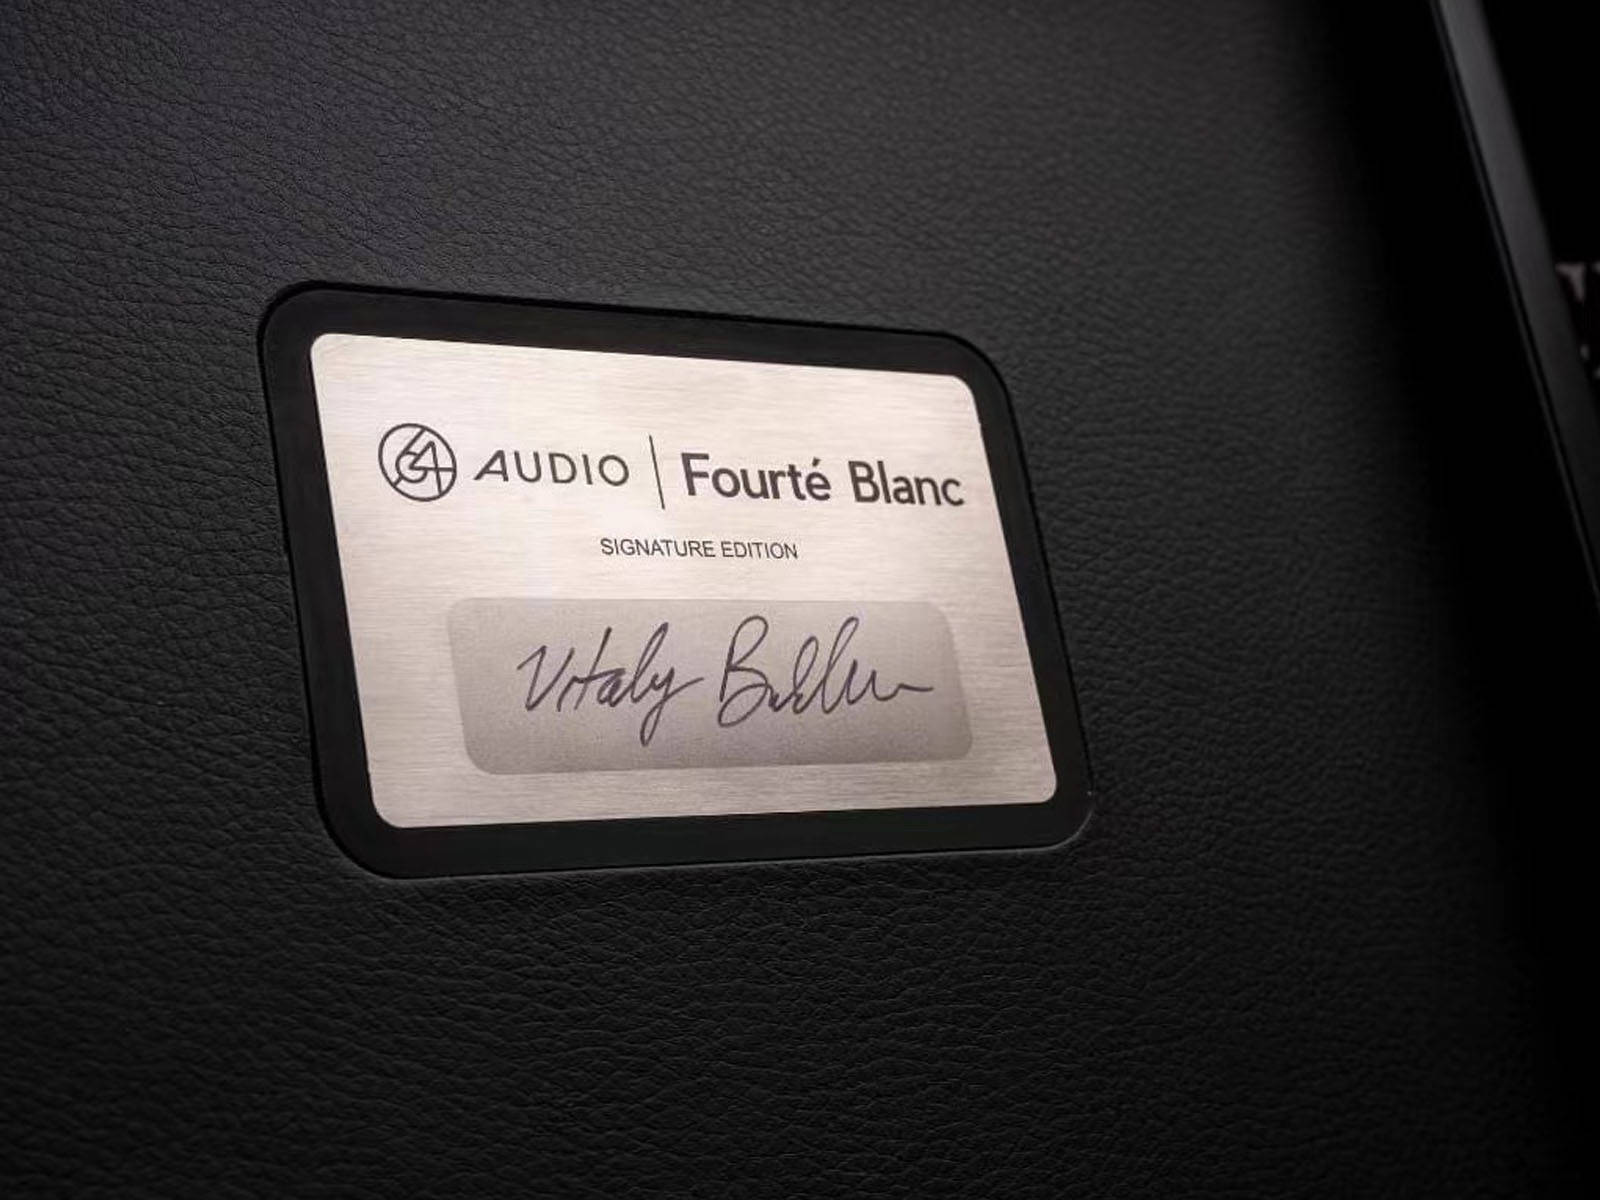 散人传奇苹果版:64 Audio Fourté Blanc 创始人签名版之传奇谢幕 amp; 荣耀赓续-第4张图片-太平洋在线下载